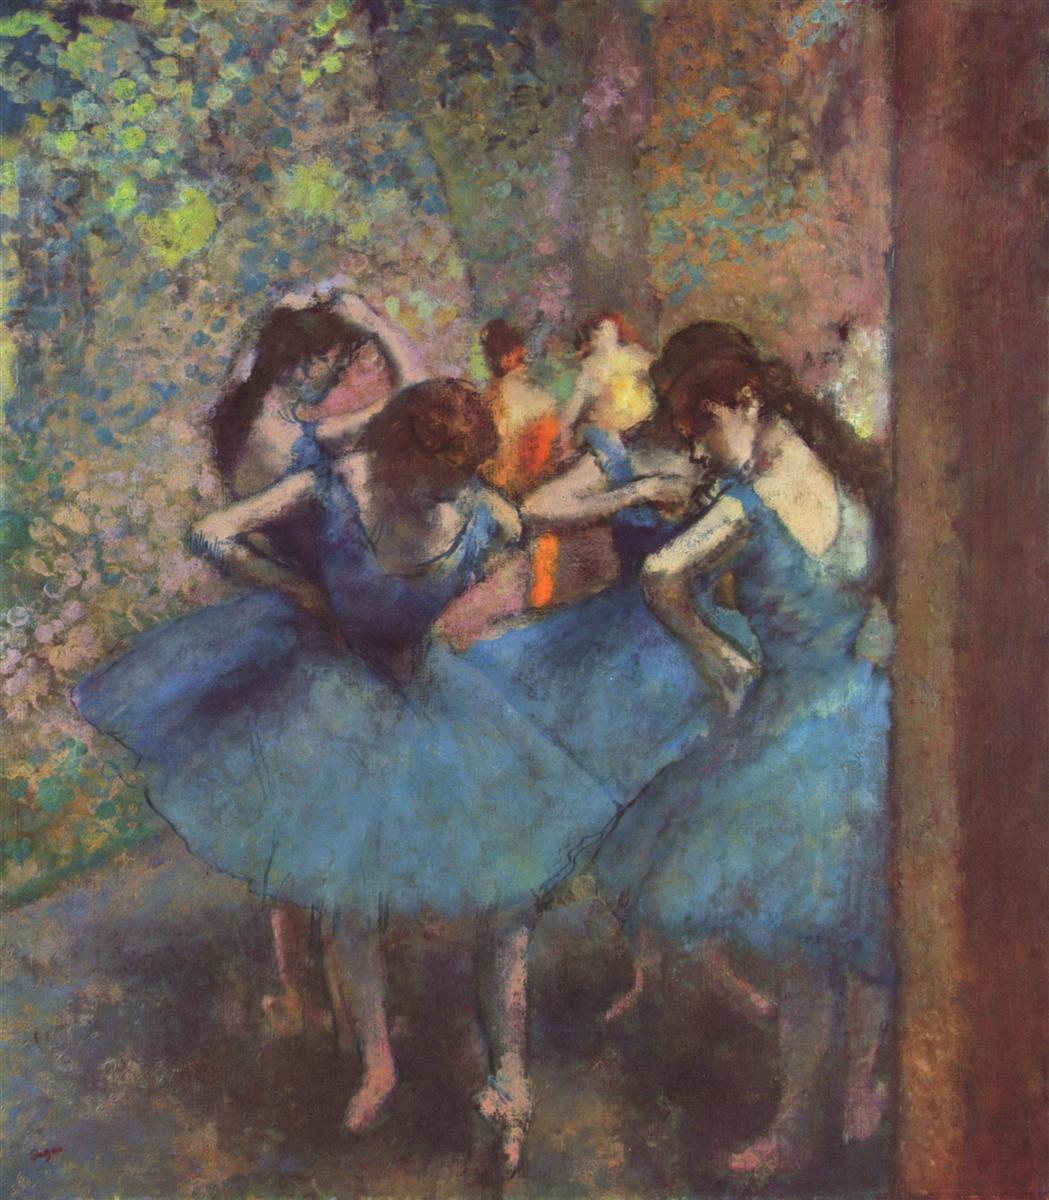 Edgar+Degas-1834-1917 (420).jpg